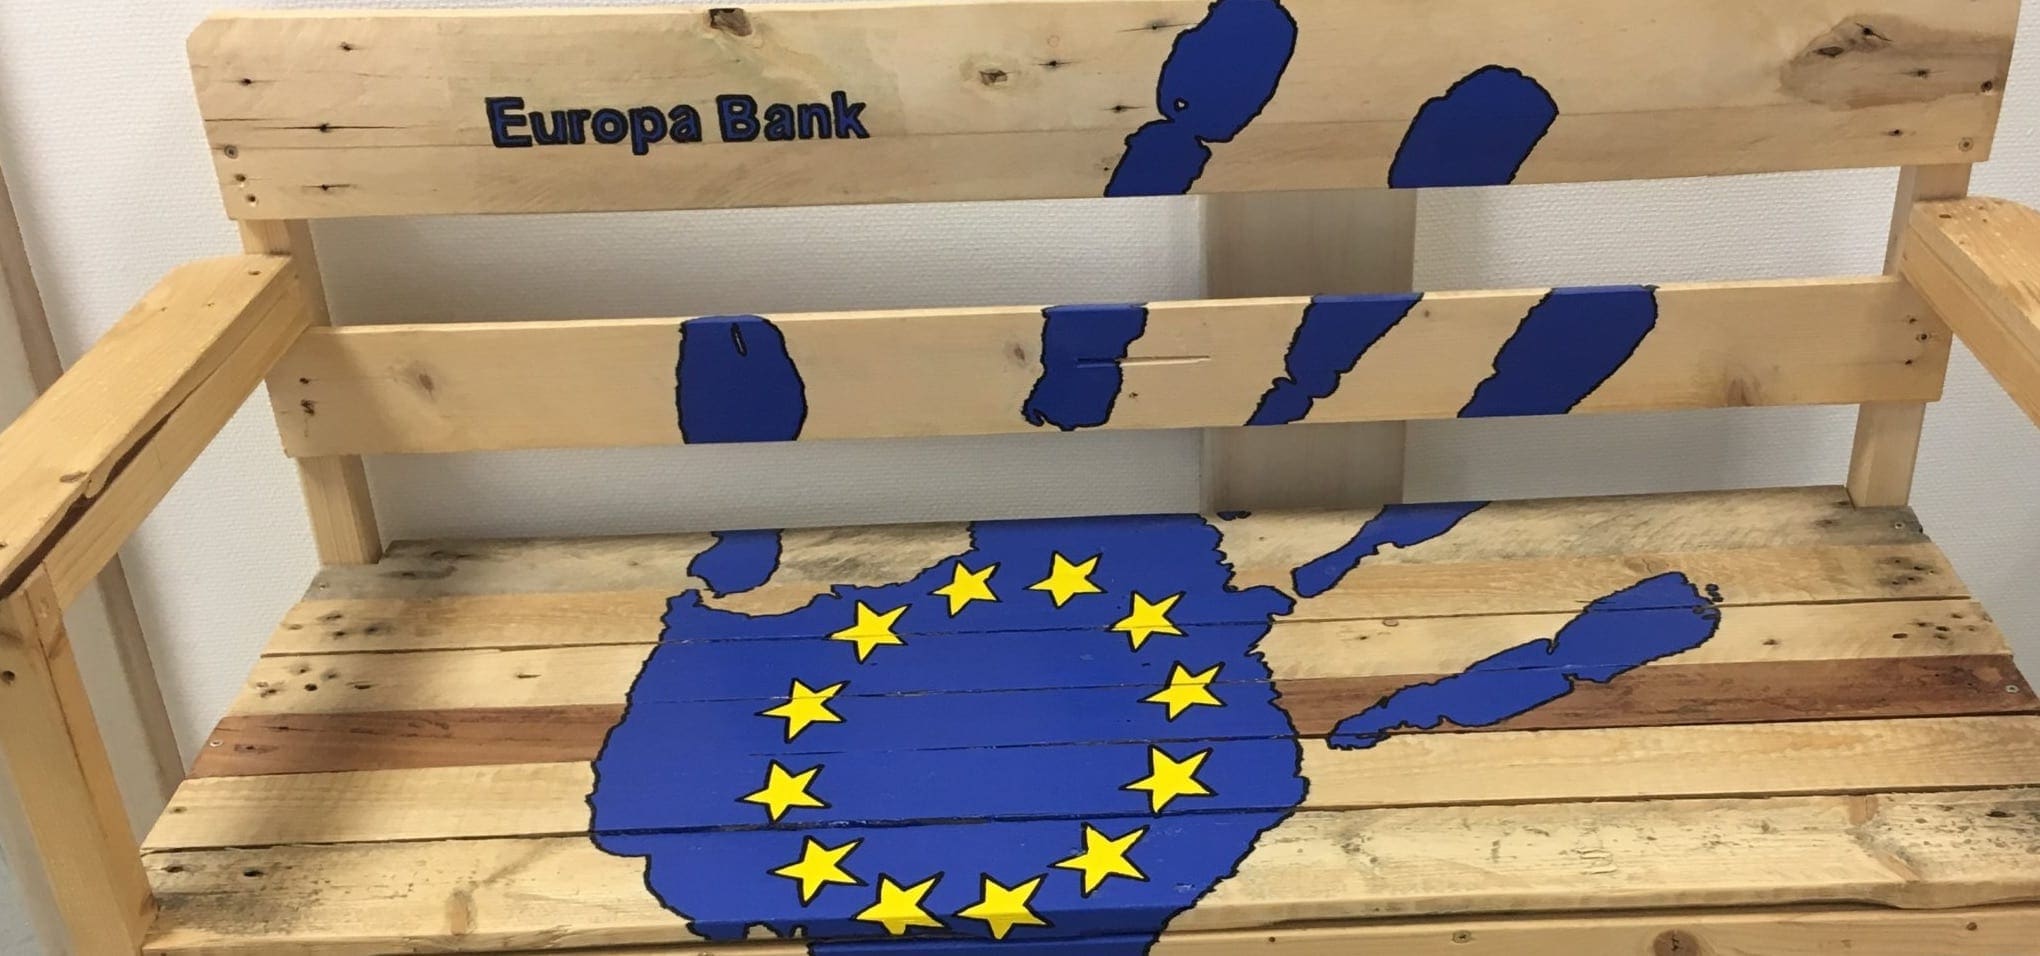 En av två eurobanker skapade av konstruktionsgillet.